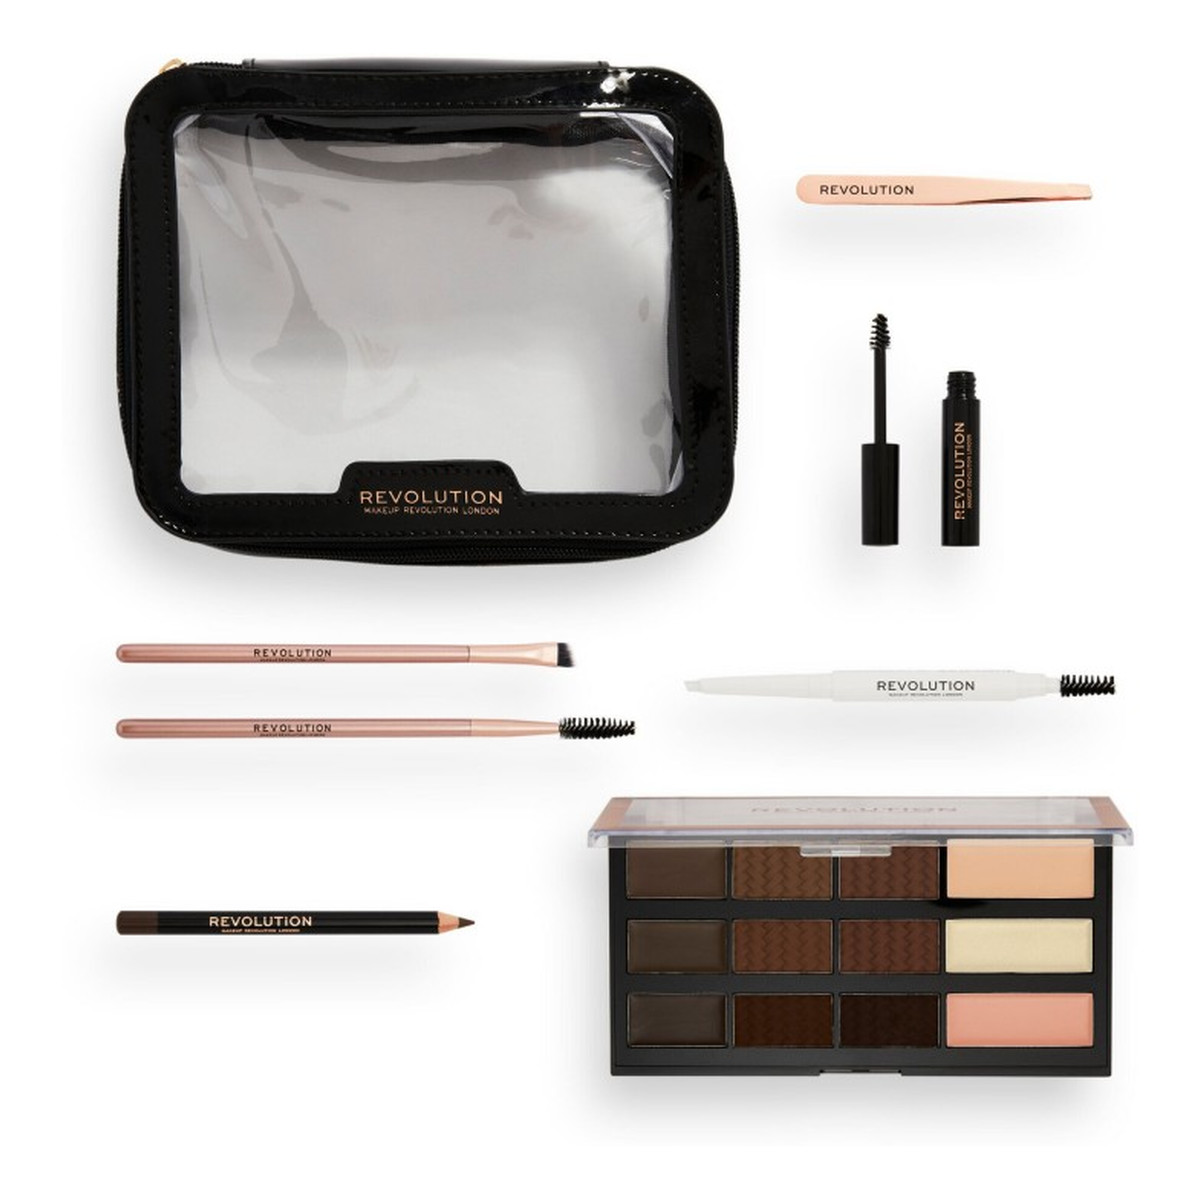 Makeup Revolution Zestaw prezentowy The Everything Brow Kit